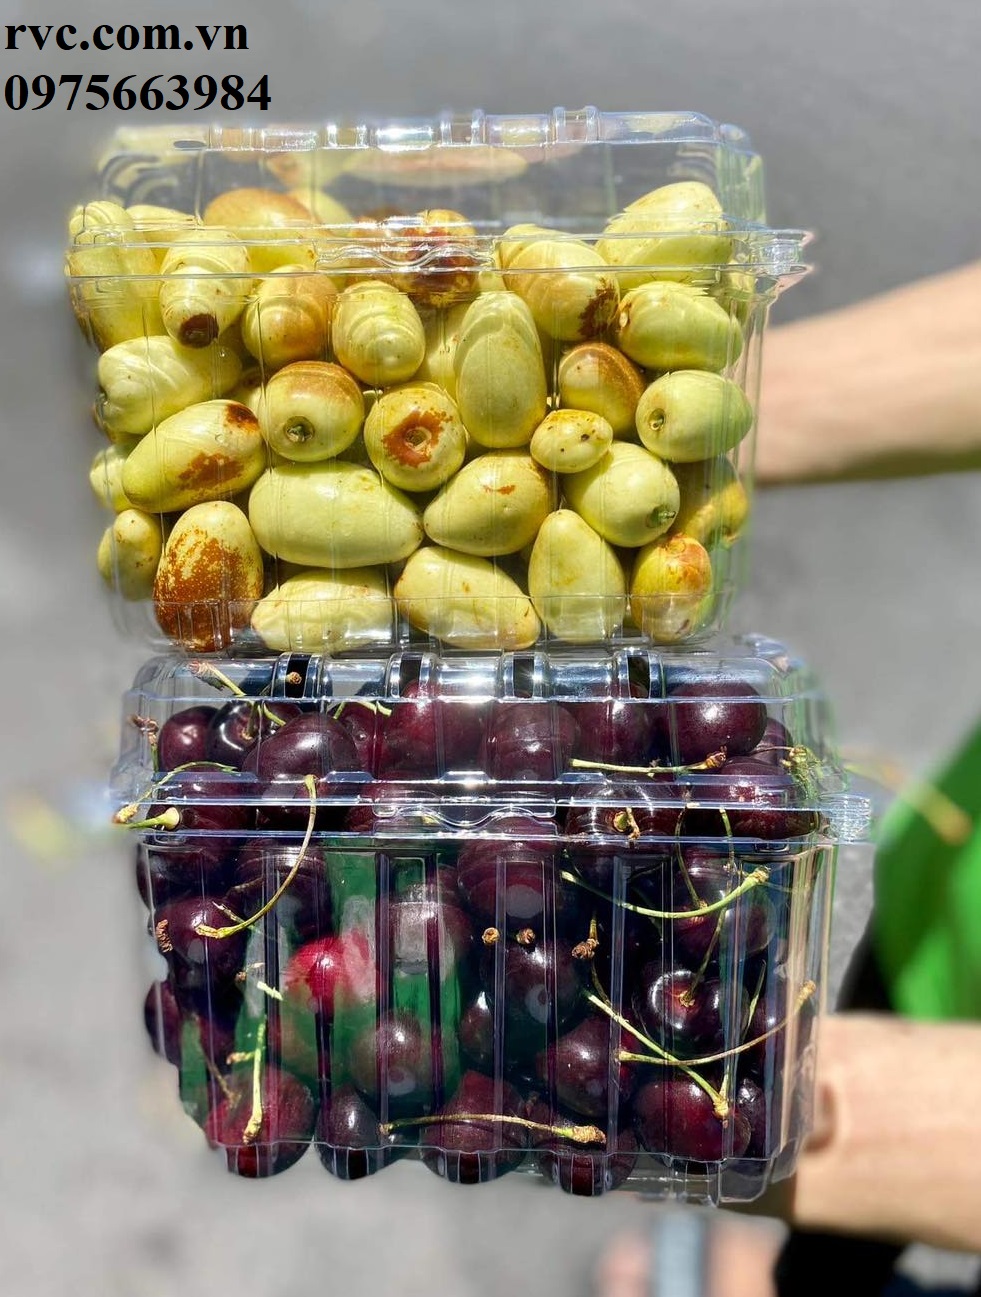 Hộp nhựa trái cây - Giải pháp bảo quản cherry toàn diện.  1691665485_Hop_dung_cherry_18